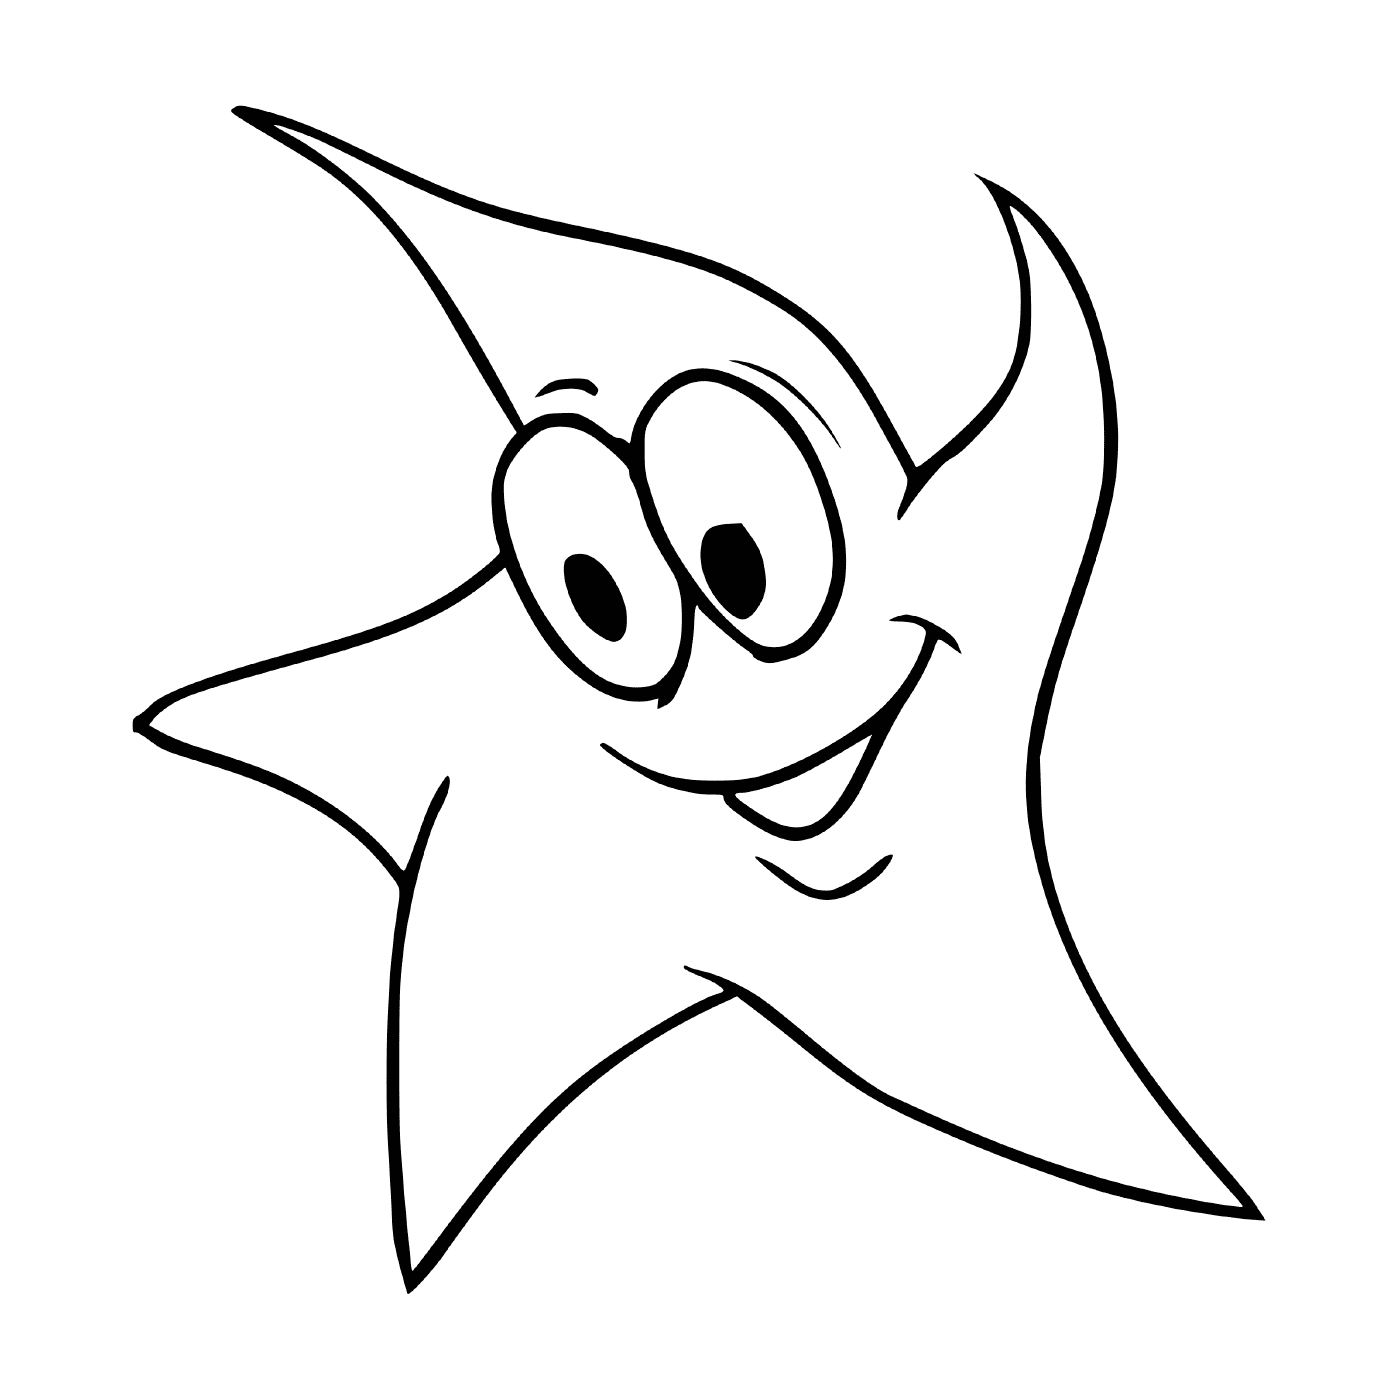   Une étoile de mer mignonne et souriante 